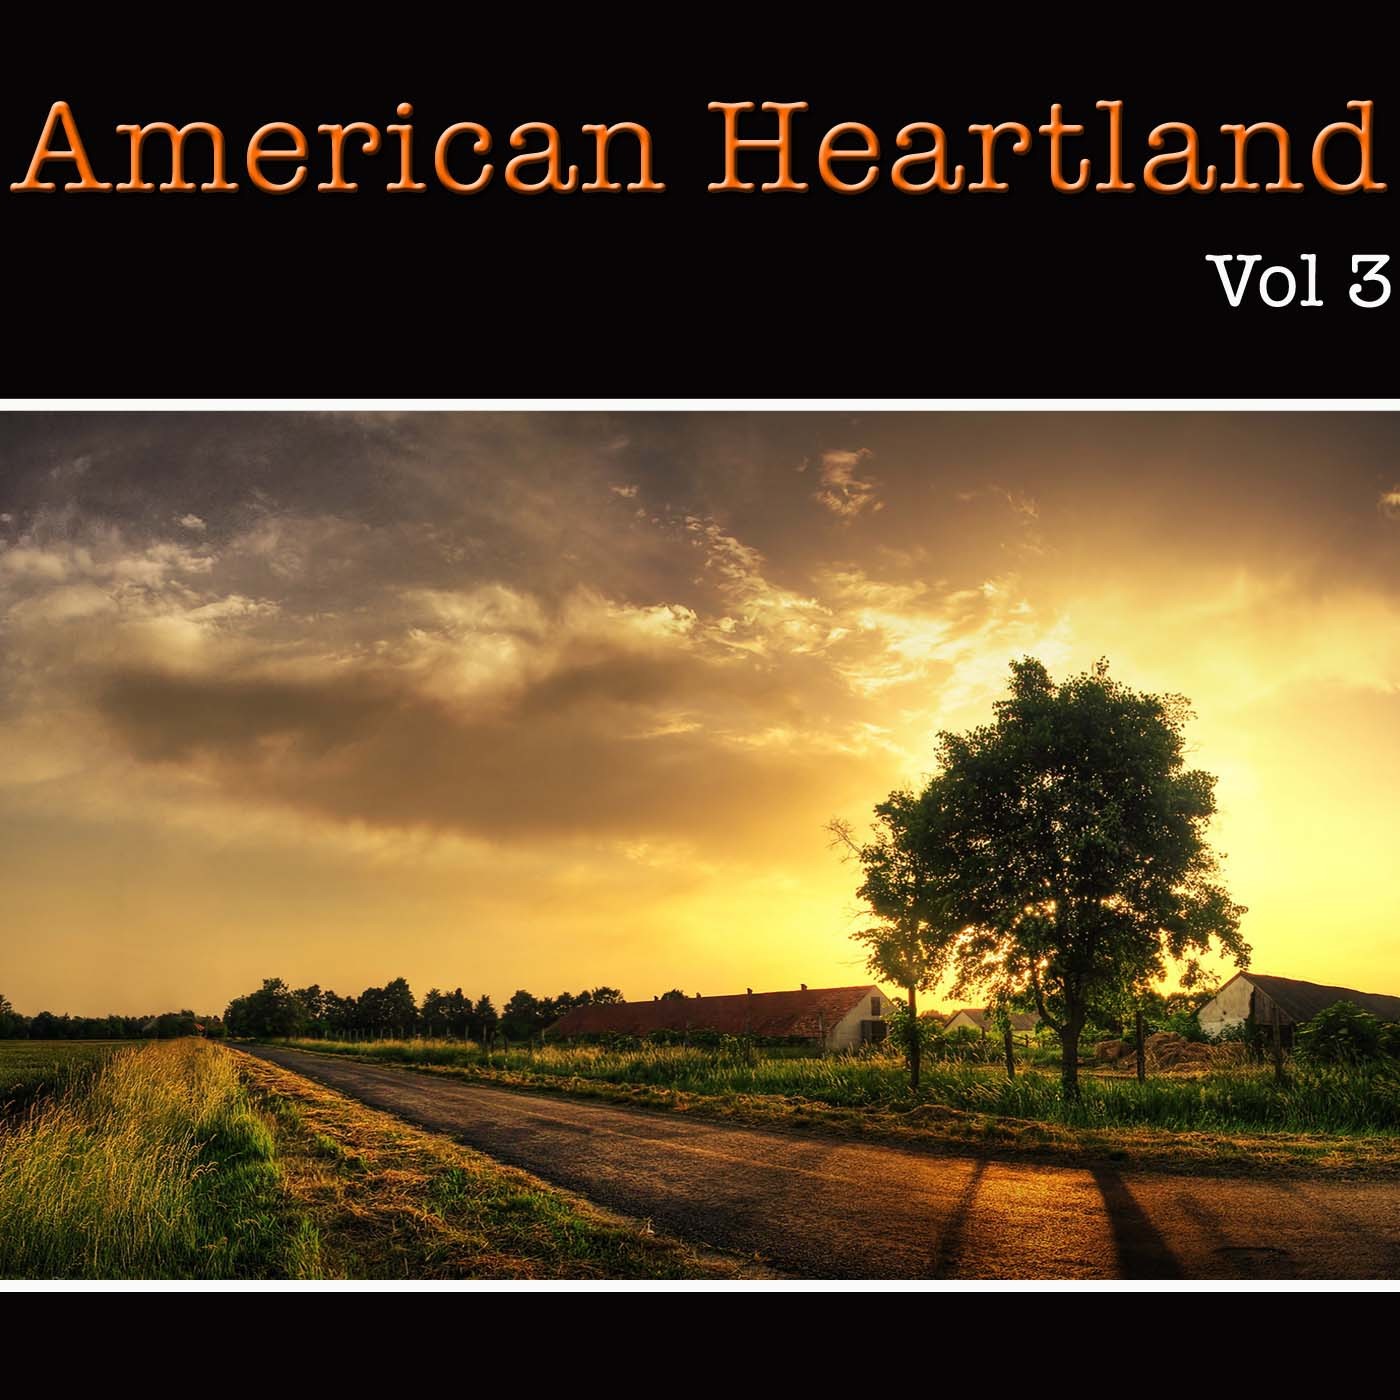 American Heartland Vol 3